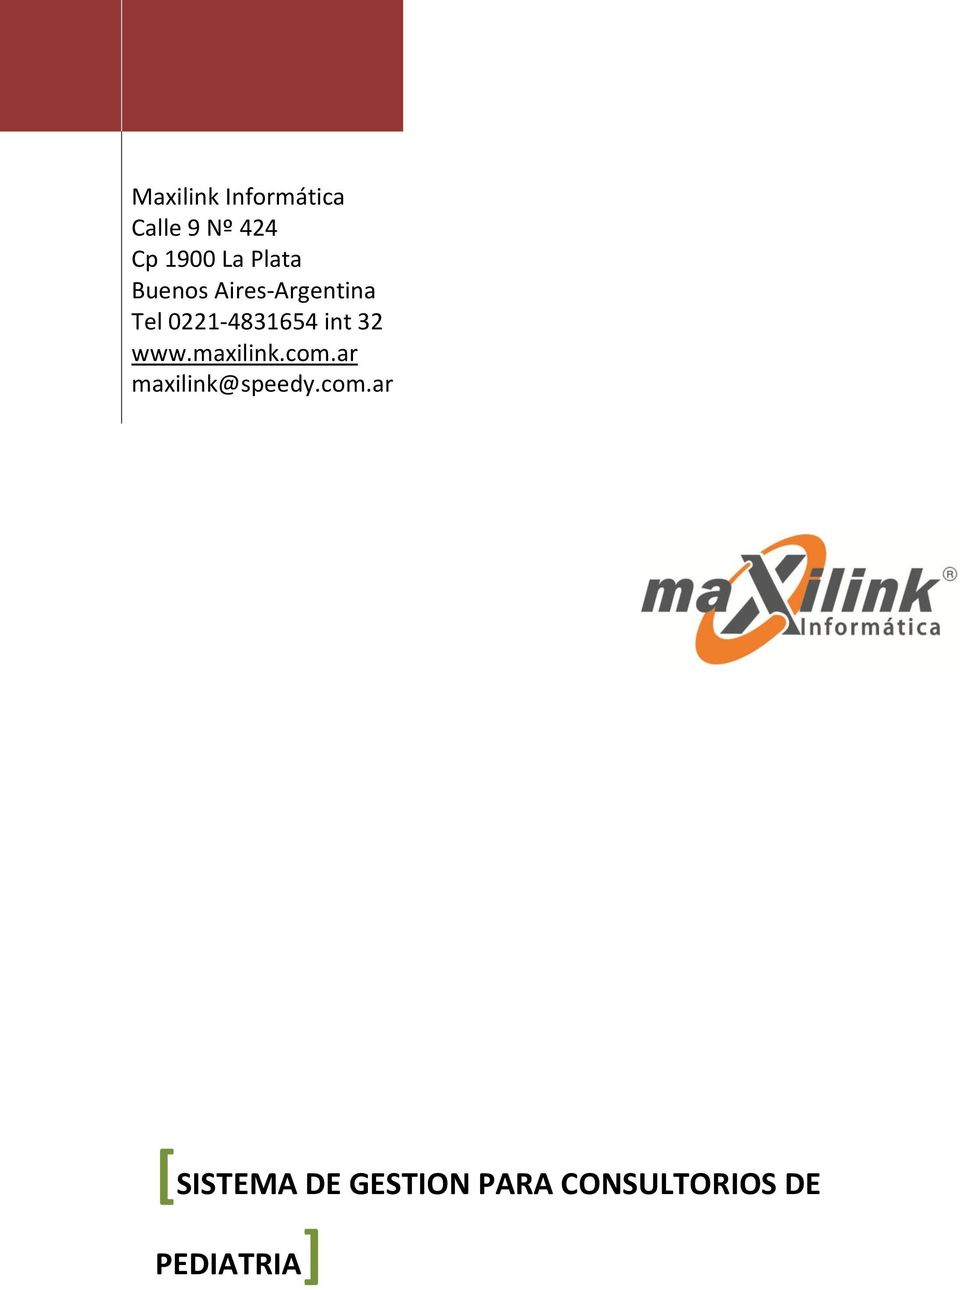 maxilink.com.